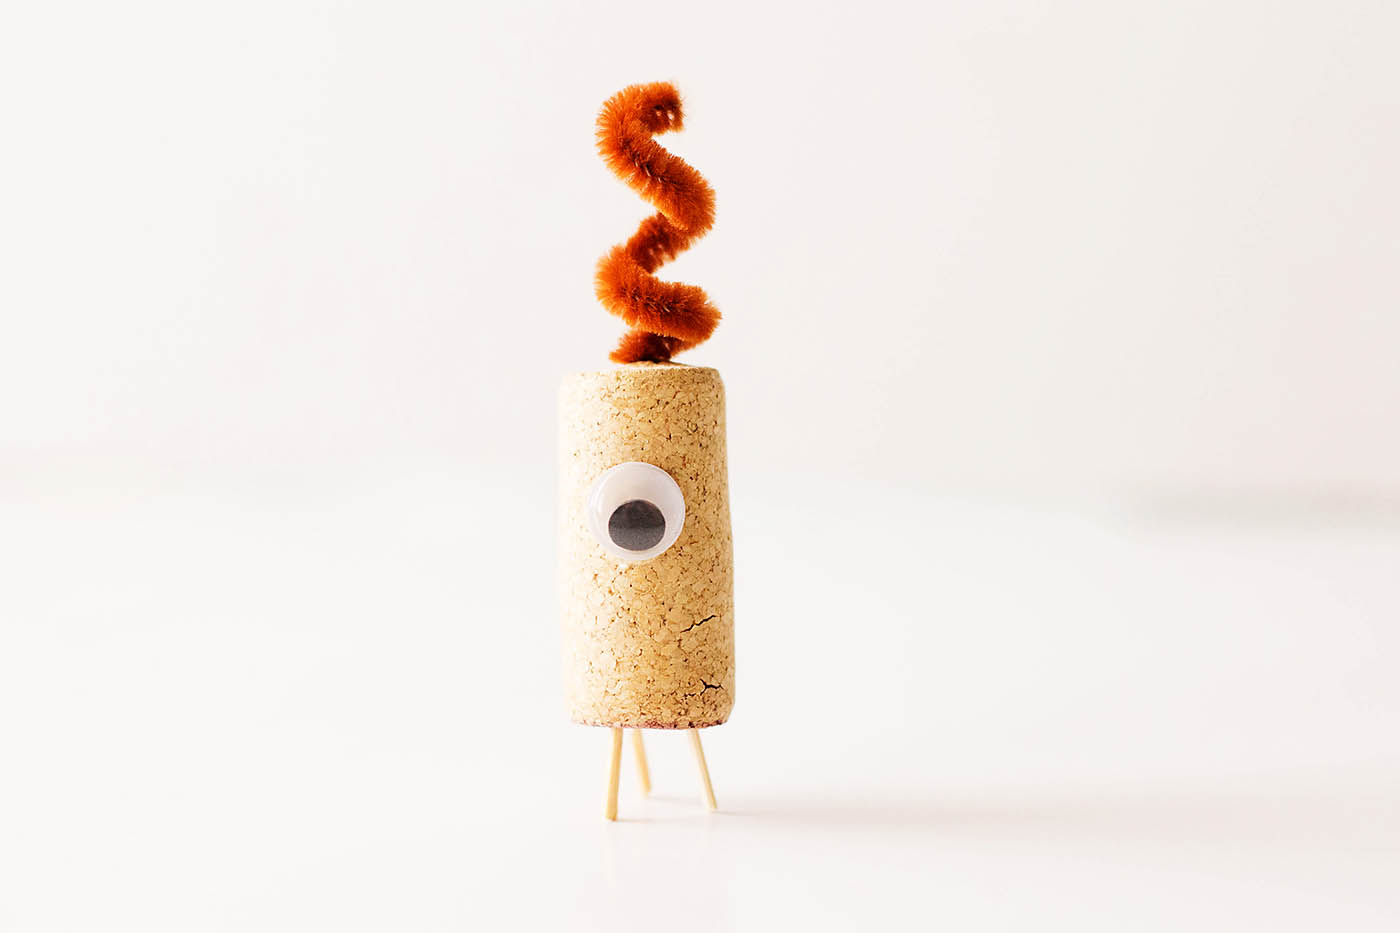 DIY recycled cork aliens